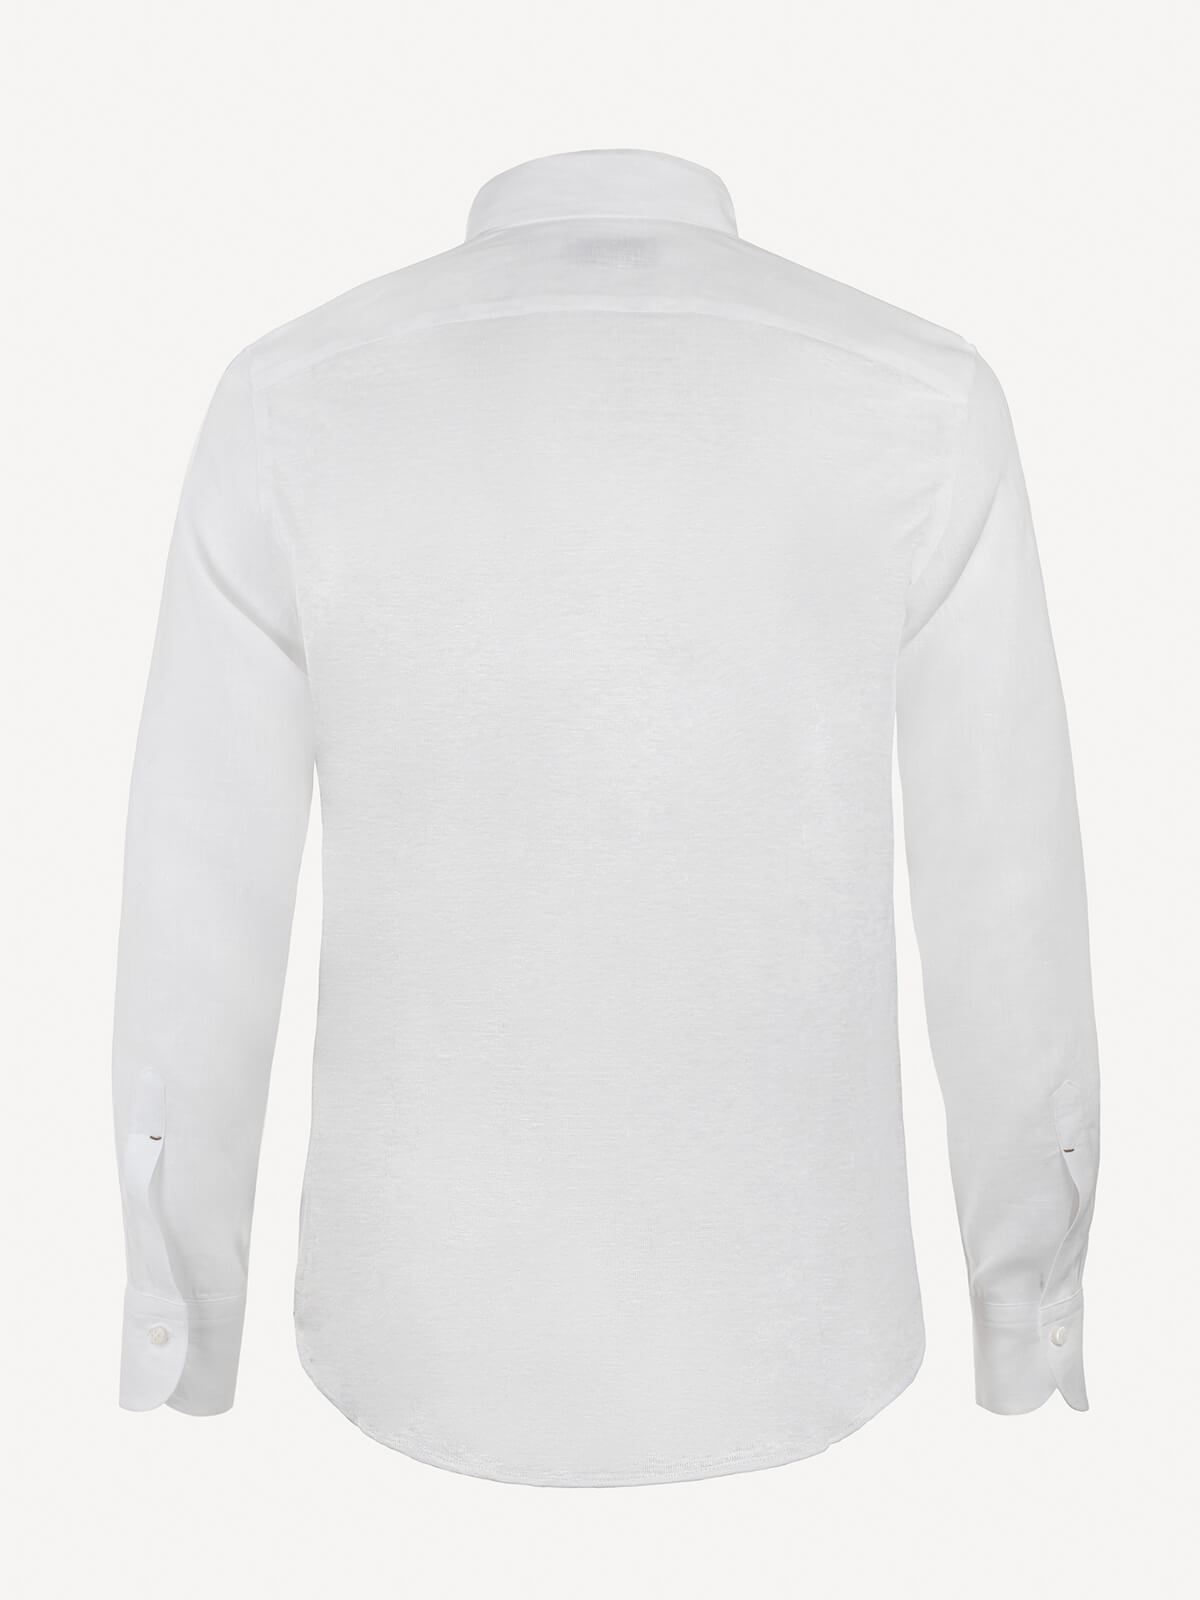 Camicia Polo back white 100% Capri